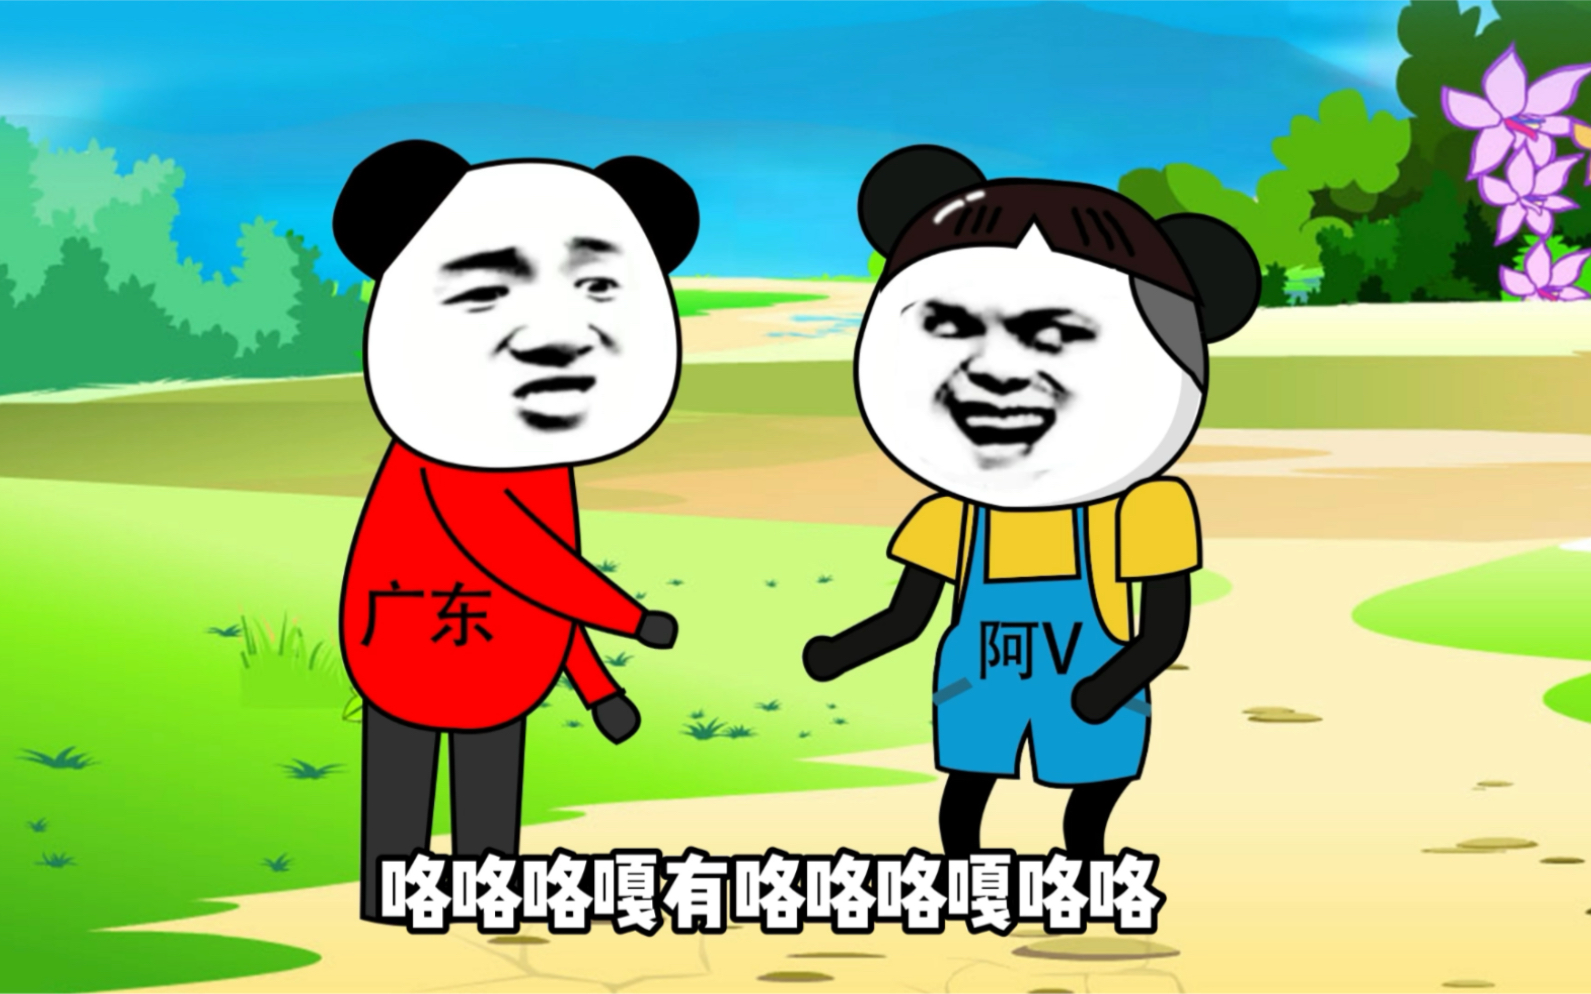 广东人说普通话#沙雕动画#搞笑高手进化论的